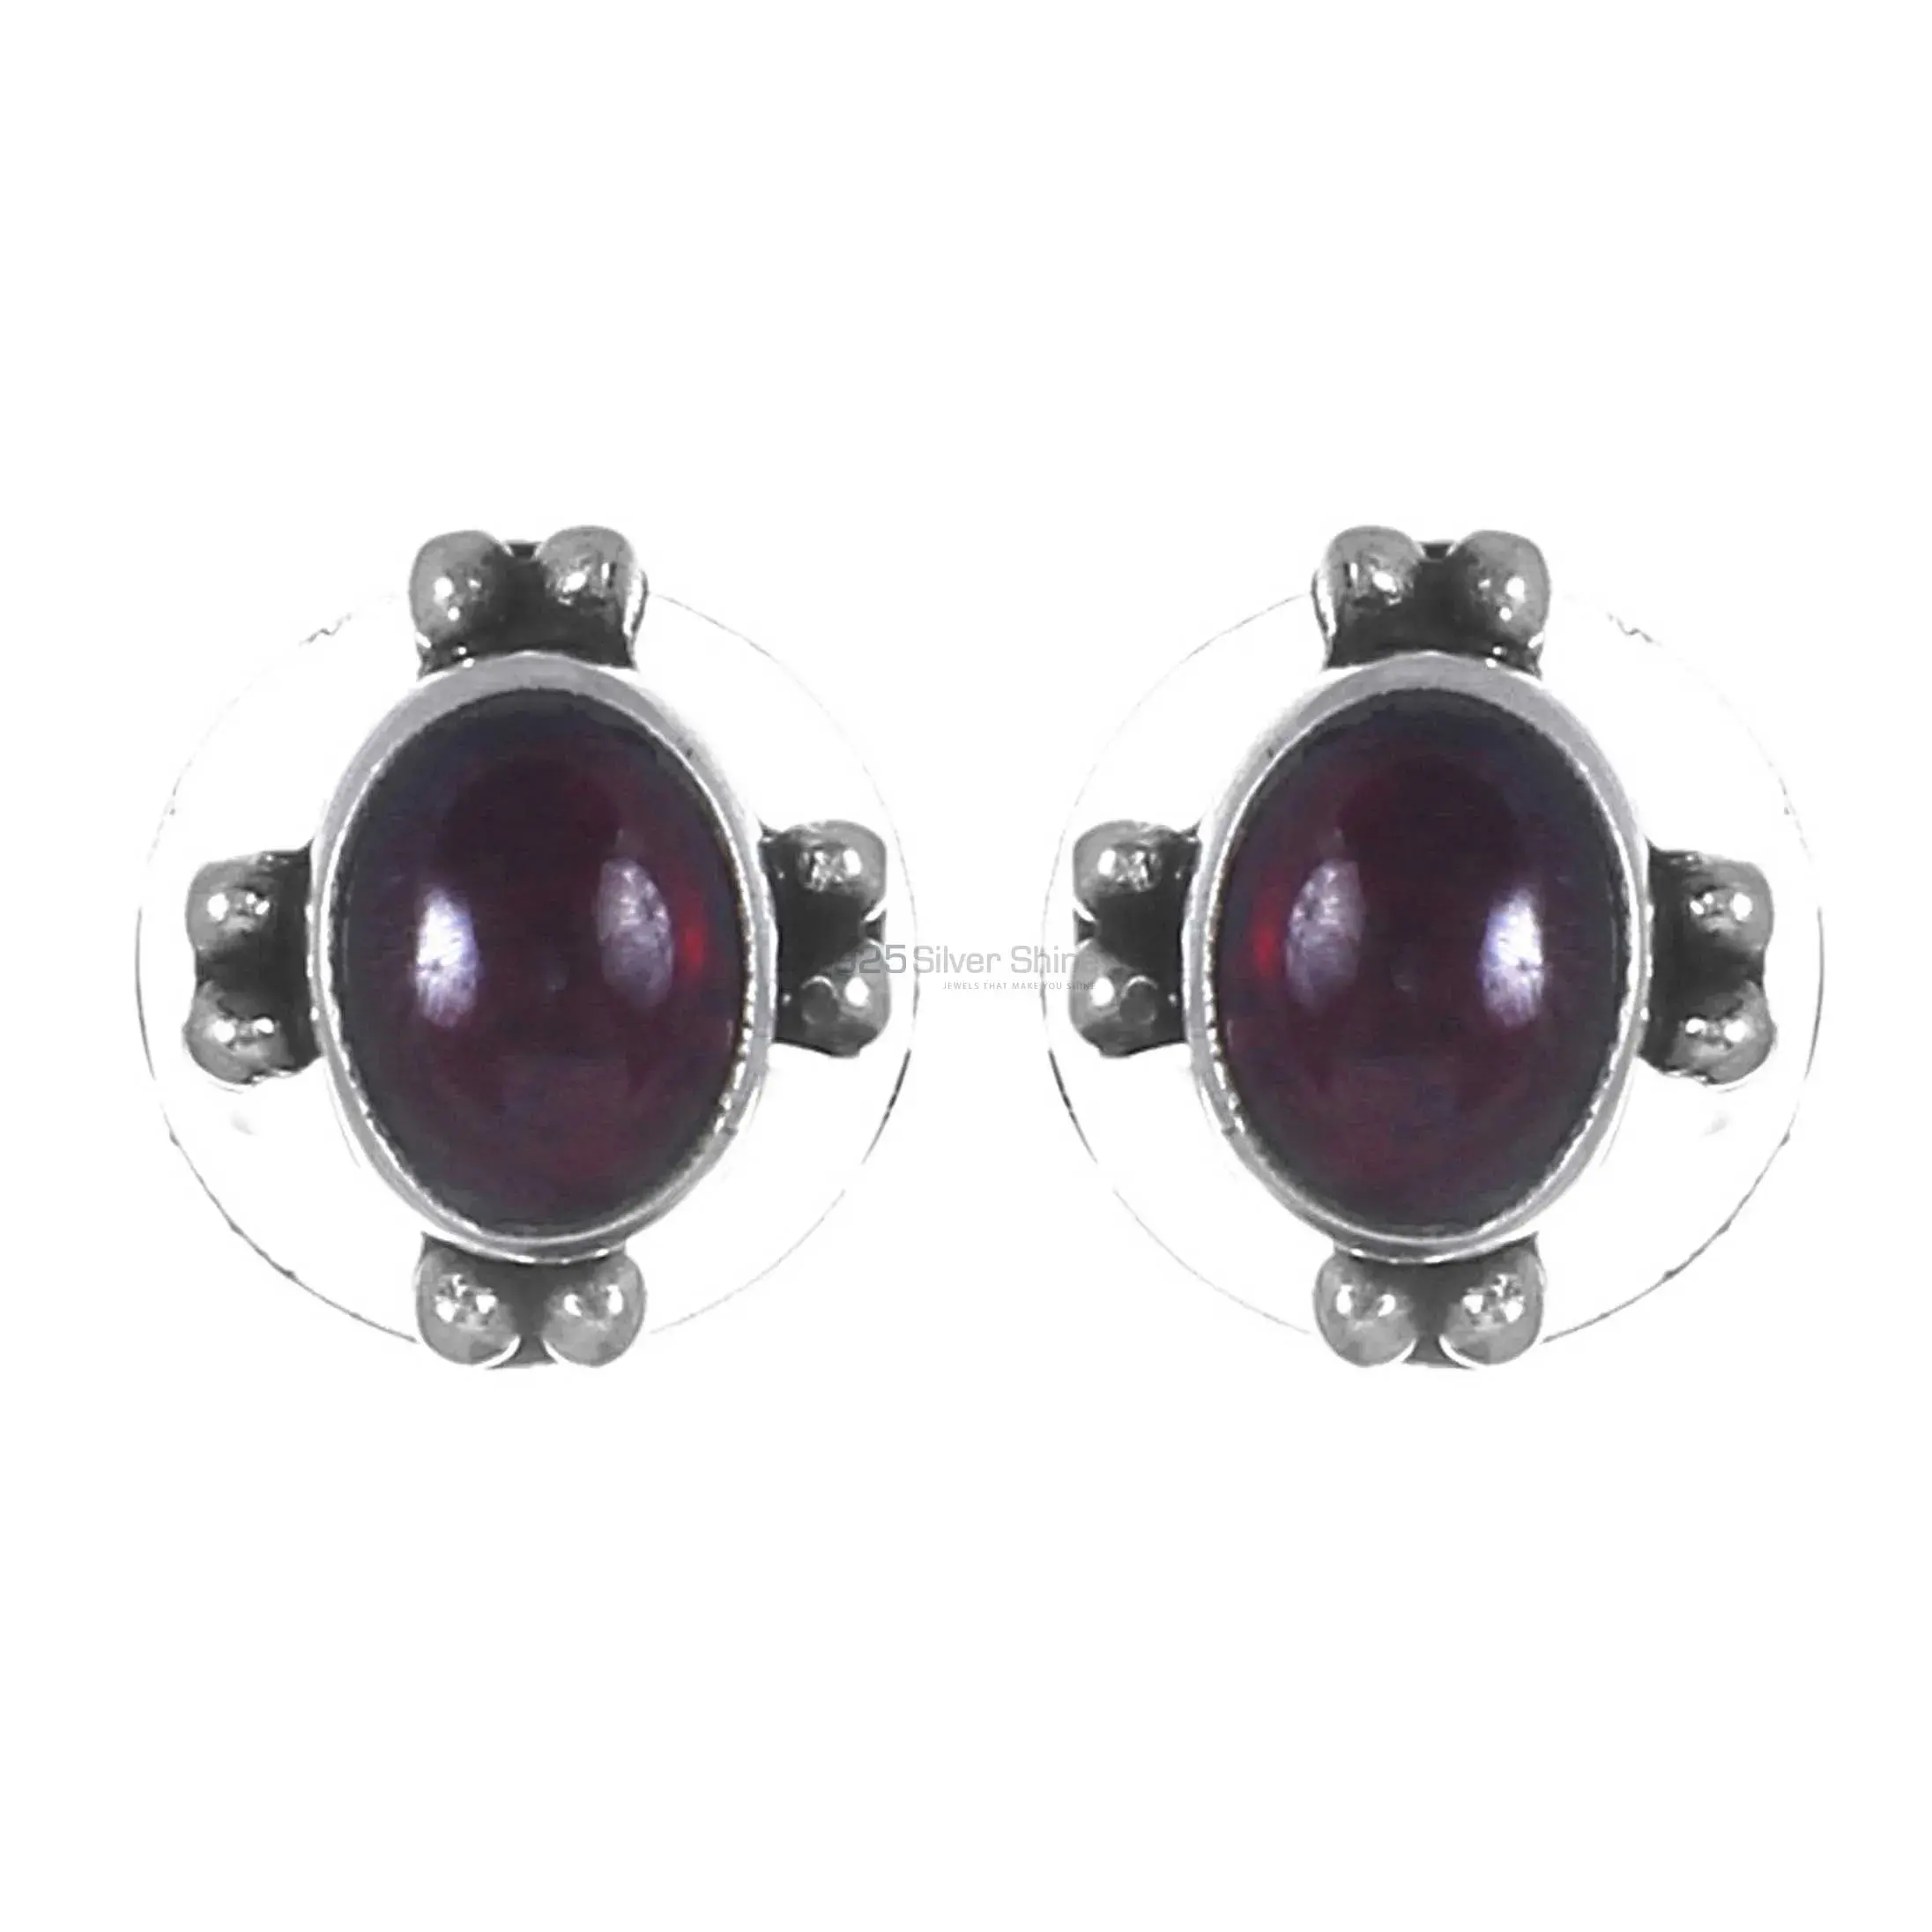 Affordable 925 Sterling Silver Earrings In Garnet Gemstone Jewelry 925SE277